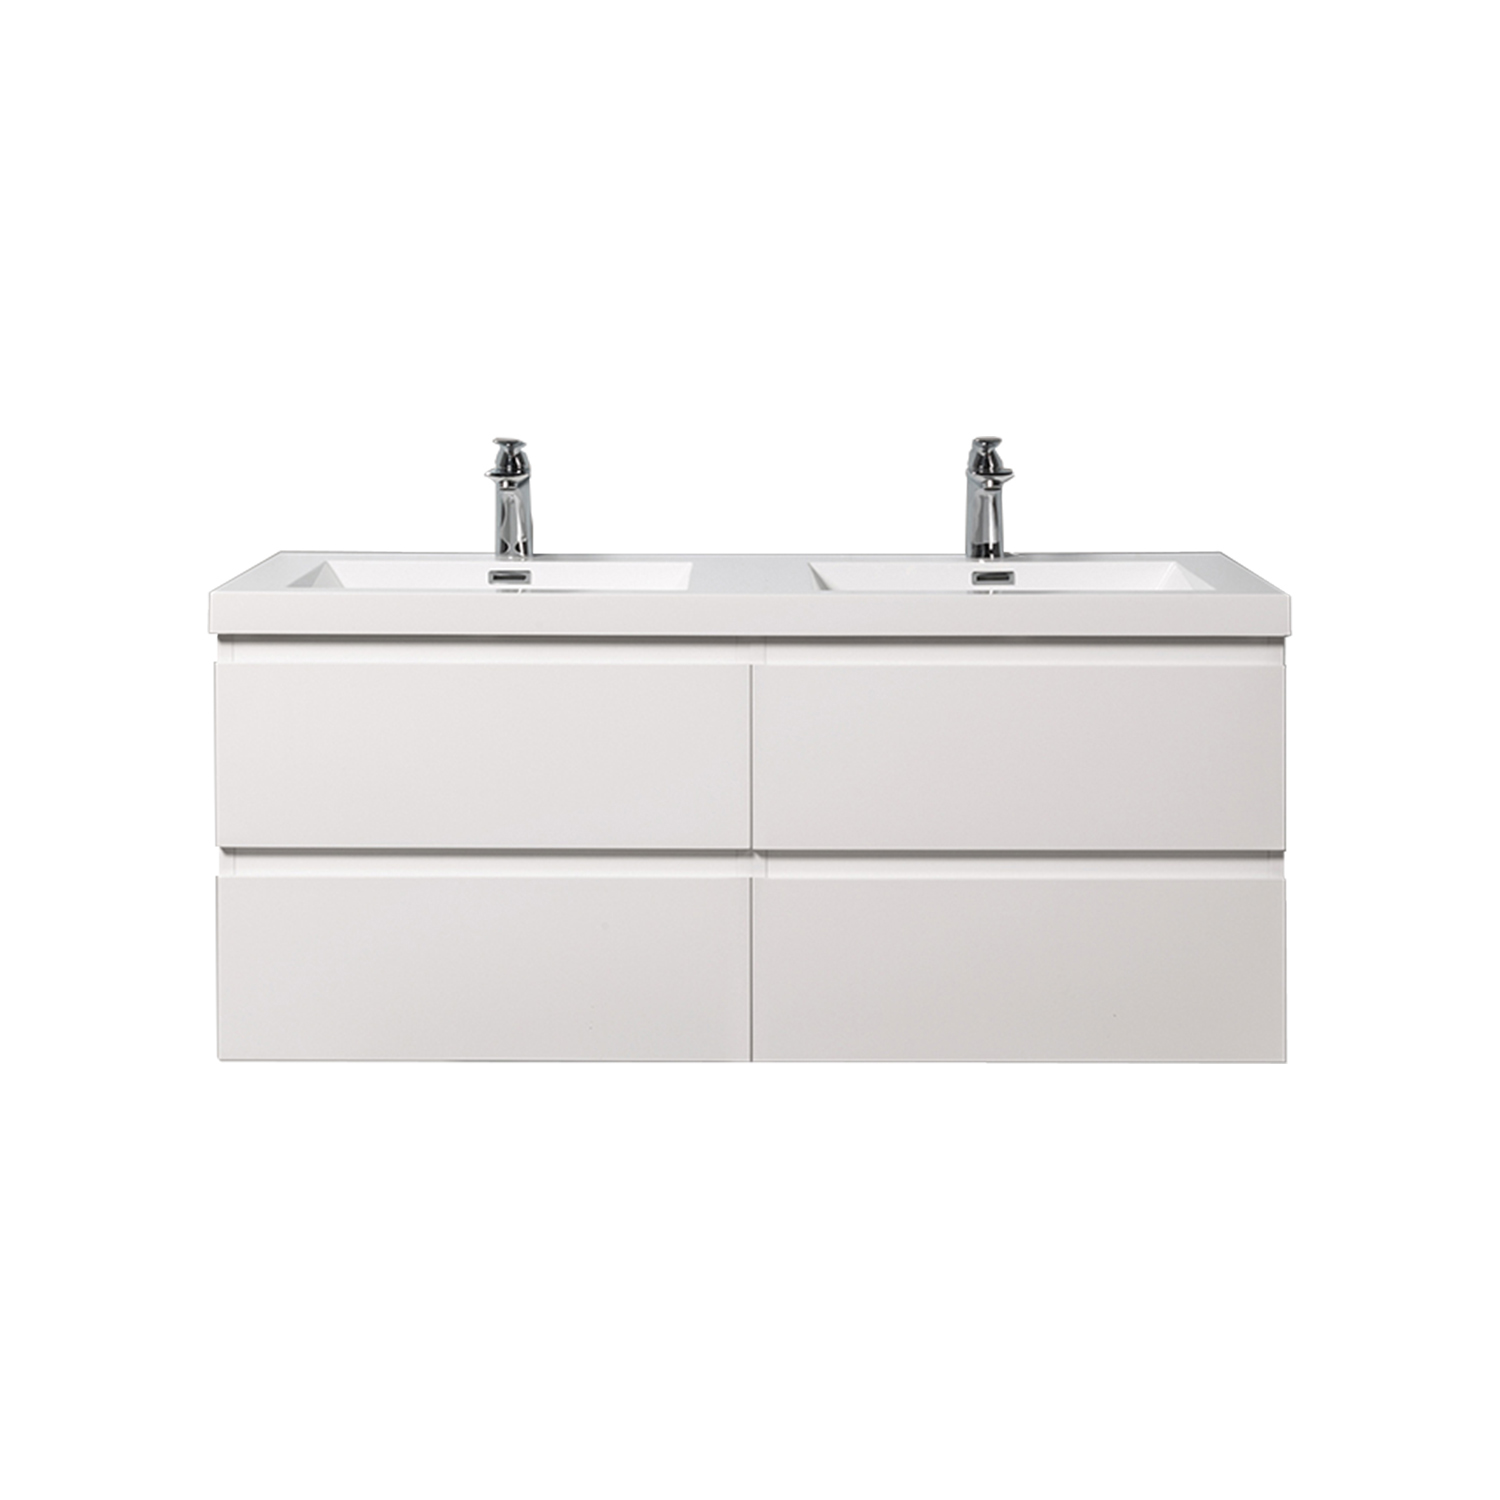 Duko Angela 48D Rectangular Sink Bathroom Vanity Cabinet 